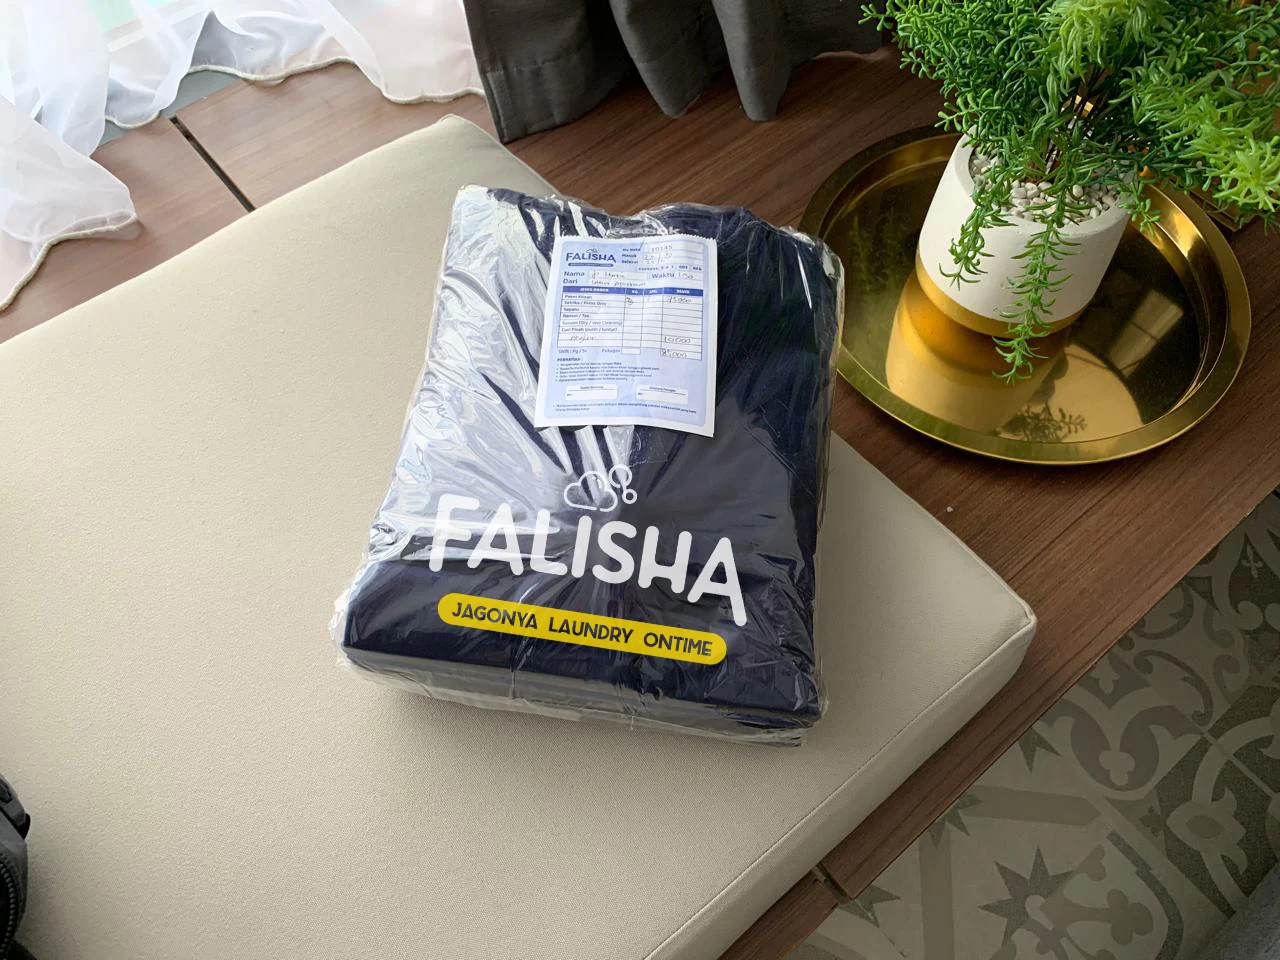 Falisha Laundry Express